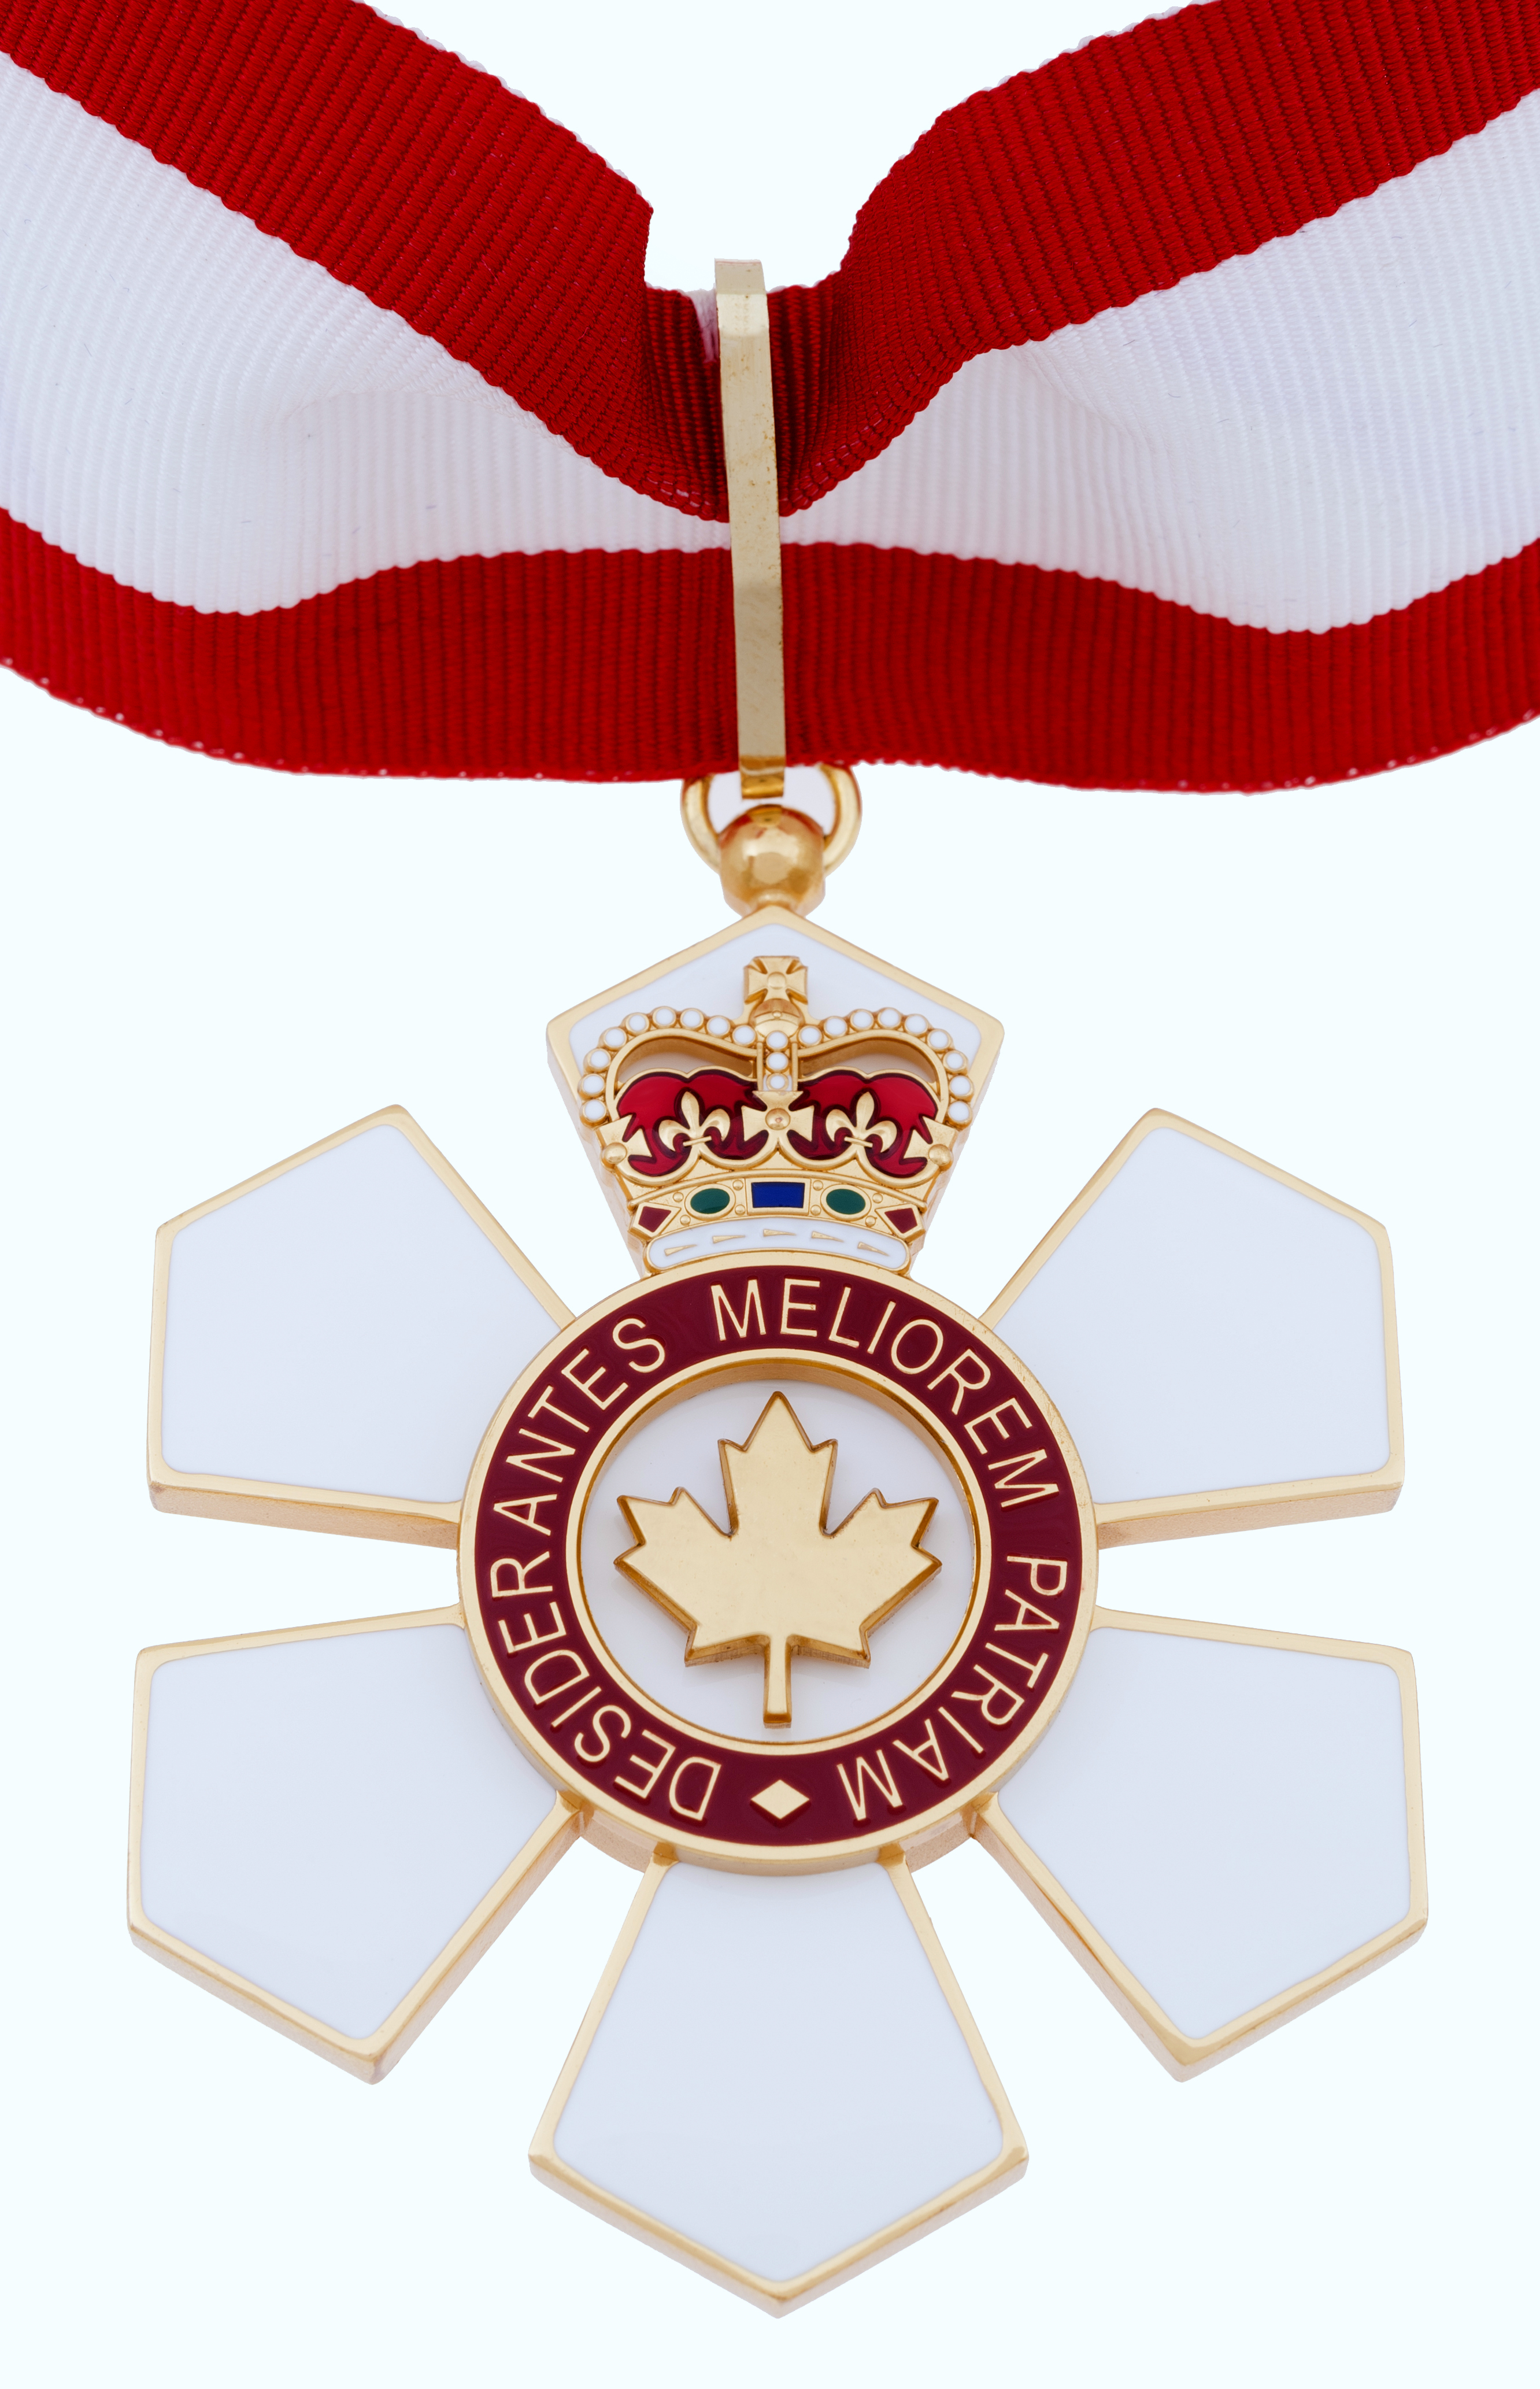 Fotografia przedstawiająca Poles awarded the Order of Canada